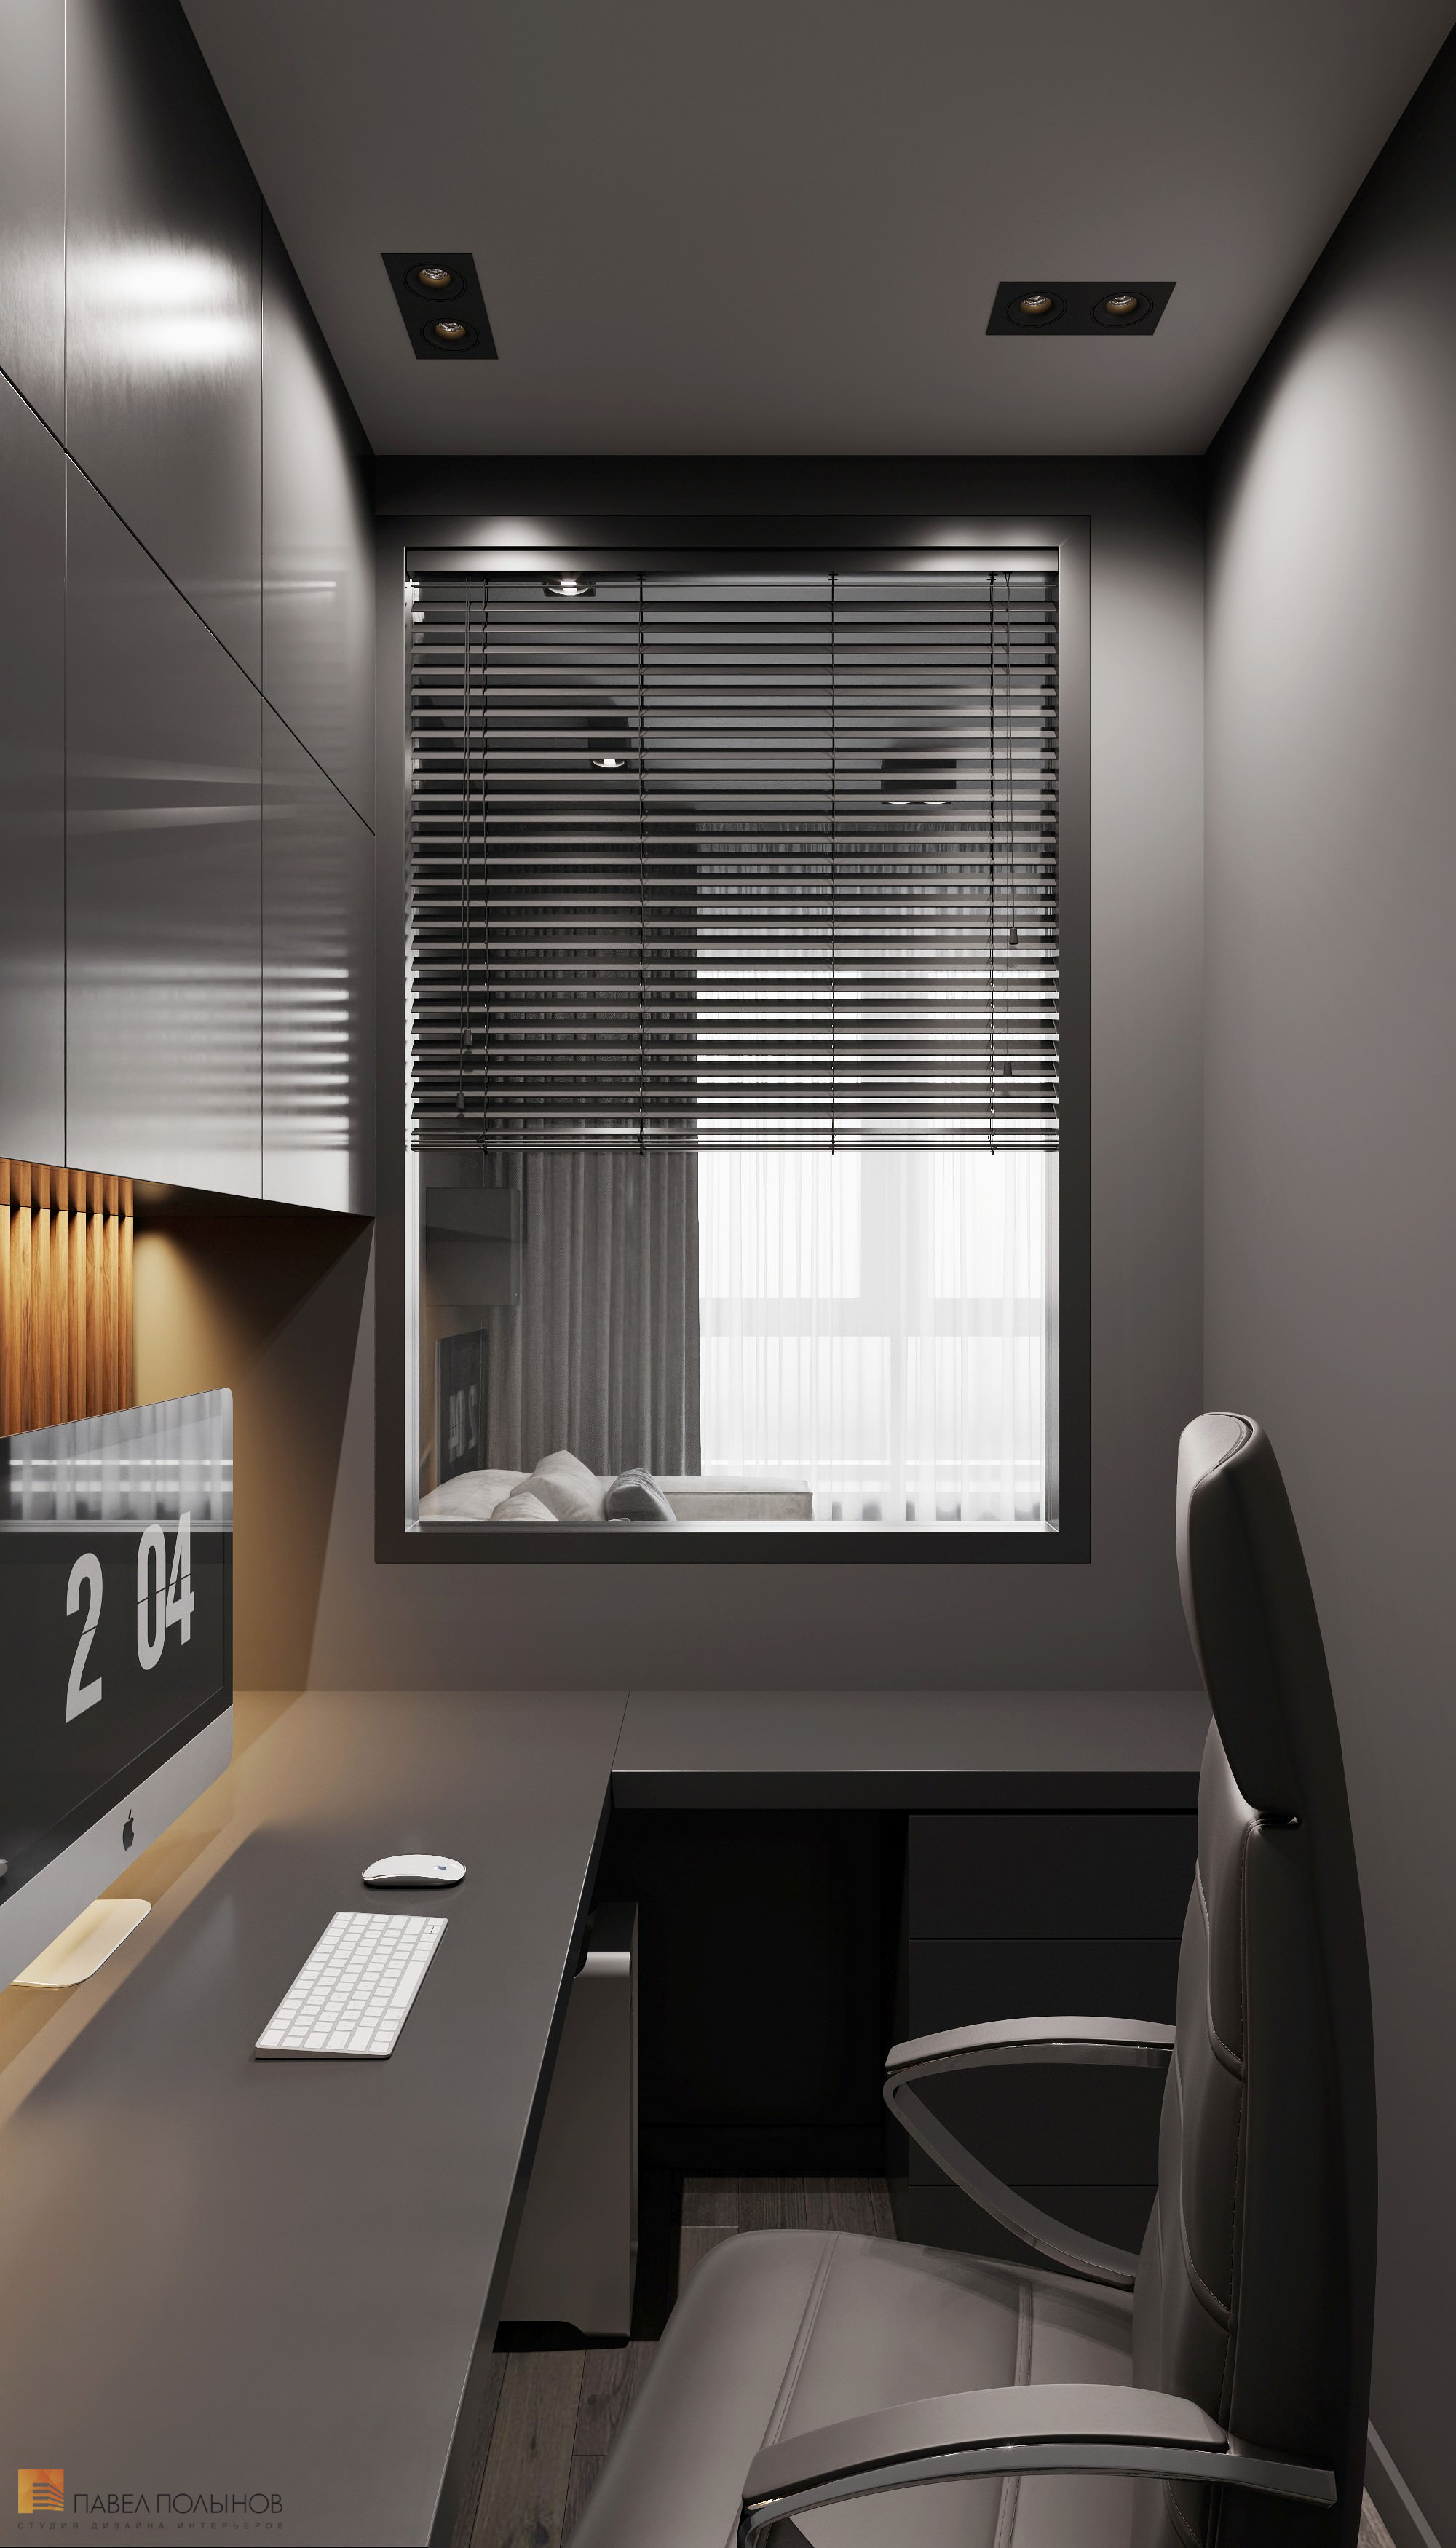 Фото дизайн интерьера домашнего кабинета из проекта «Интерьер квартиры в современном стиле, ЖК «Символ», 64 кв.м.»